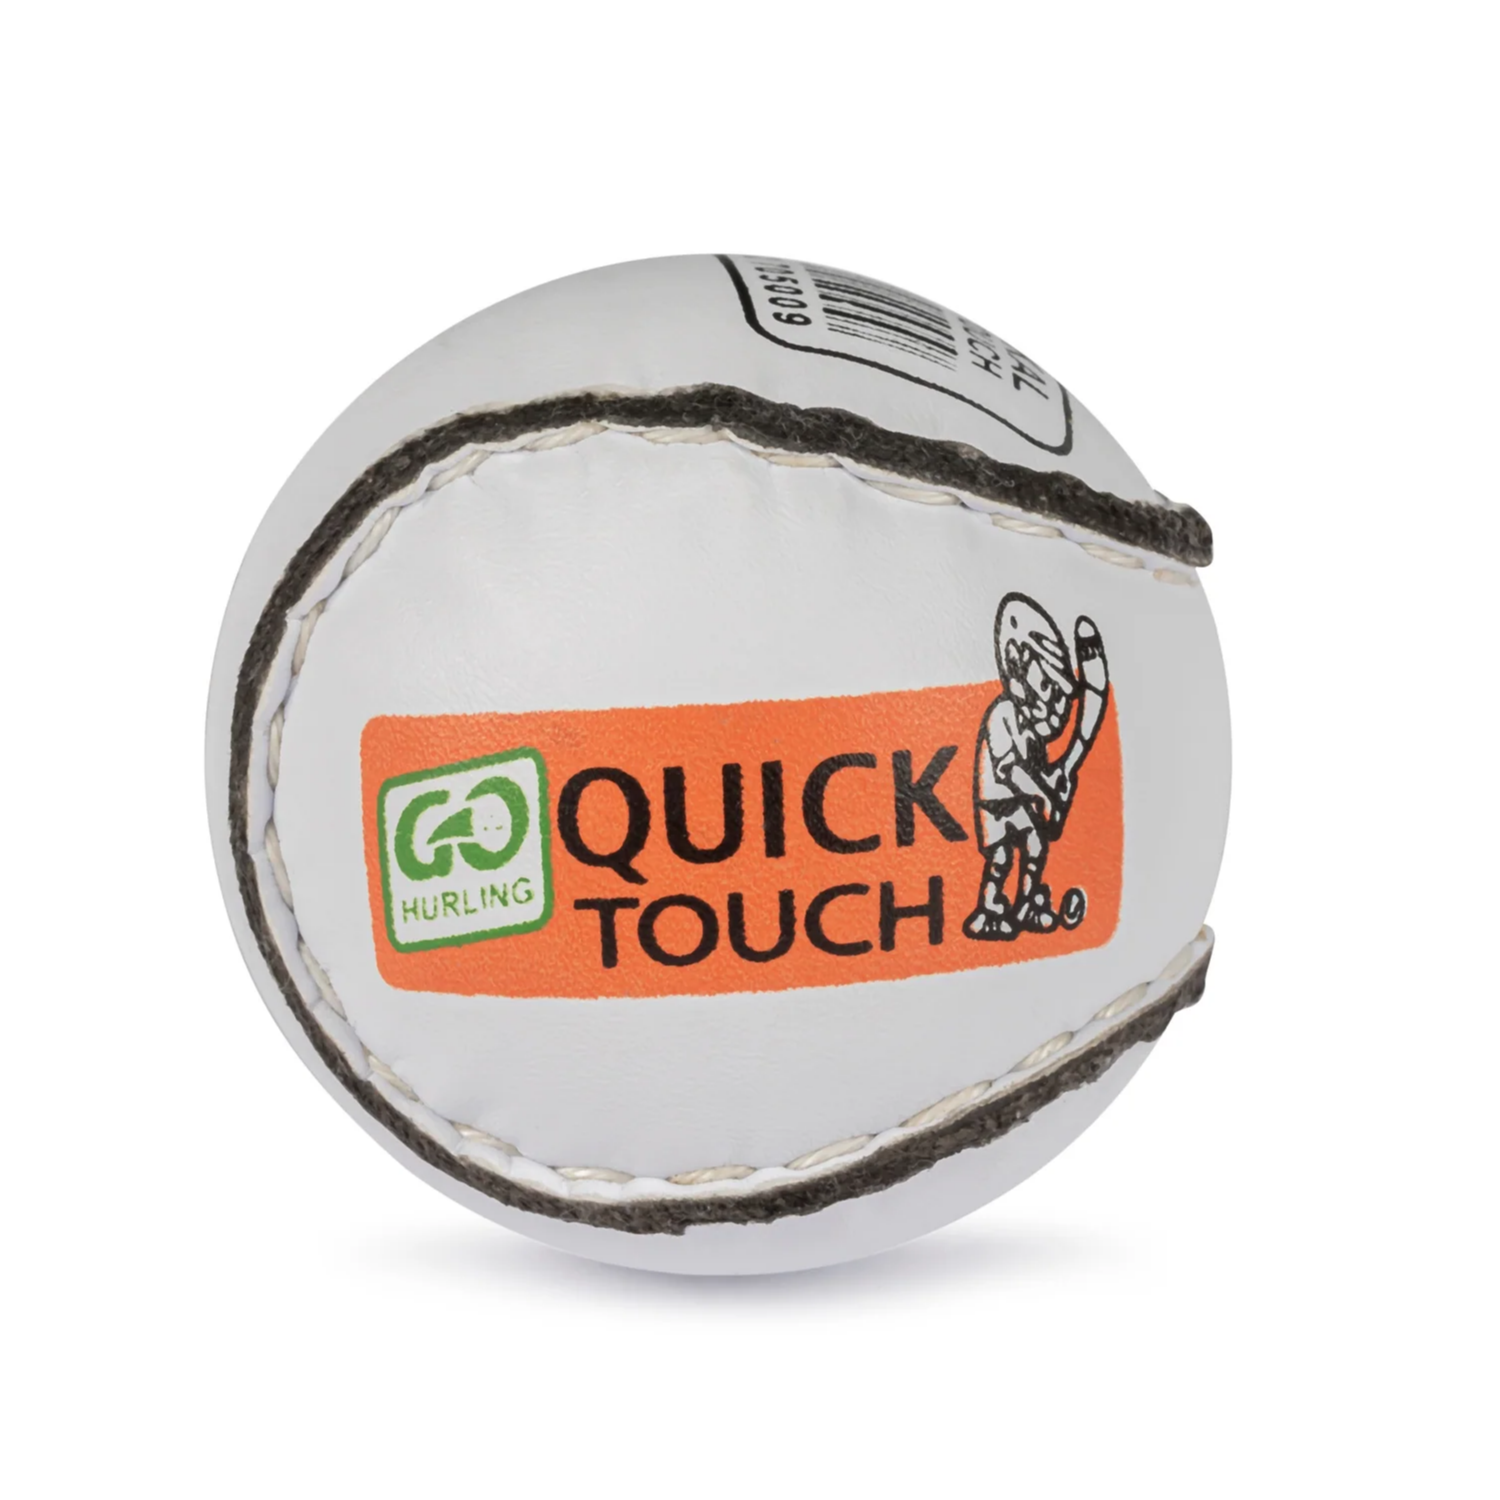 Karakal Quick Touch Sliotar (8-10 Years)